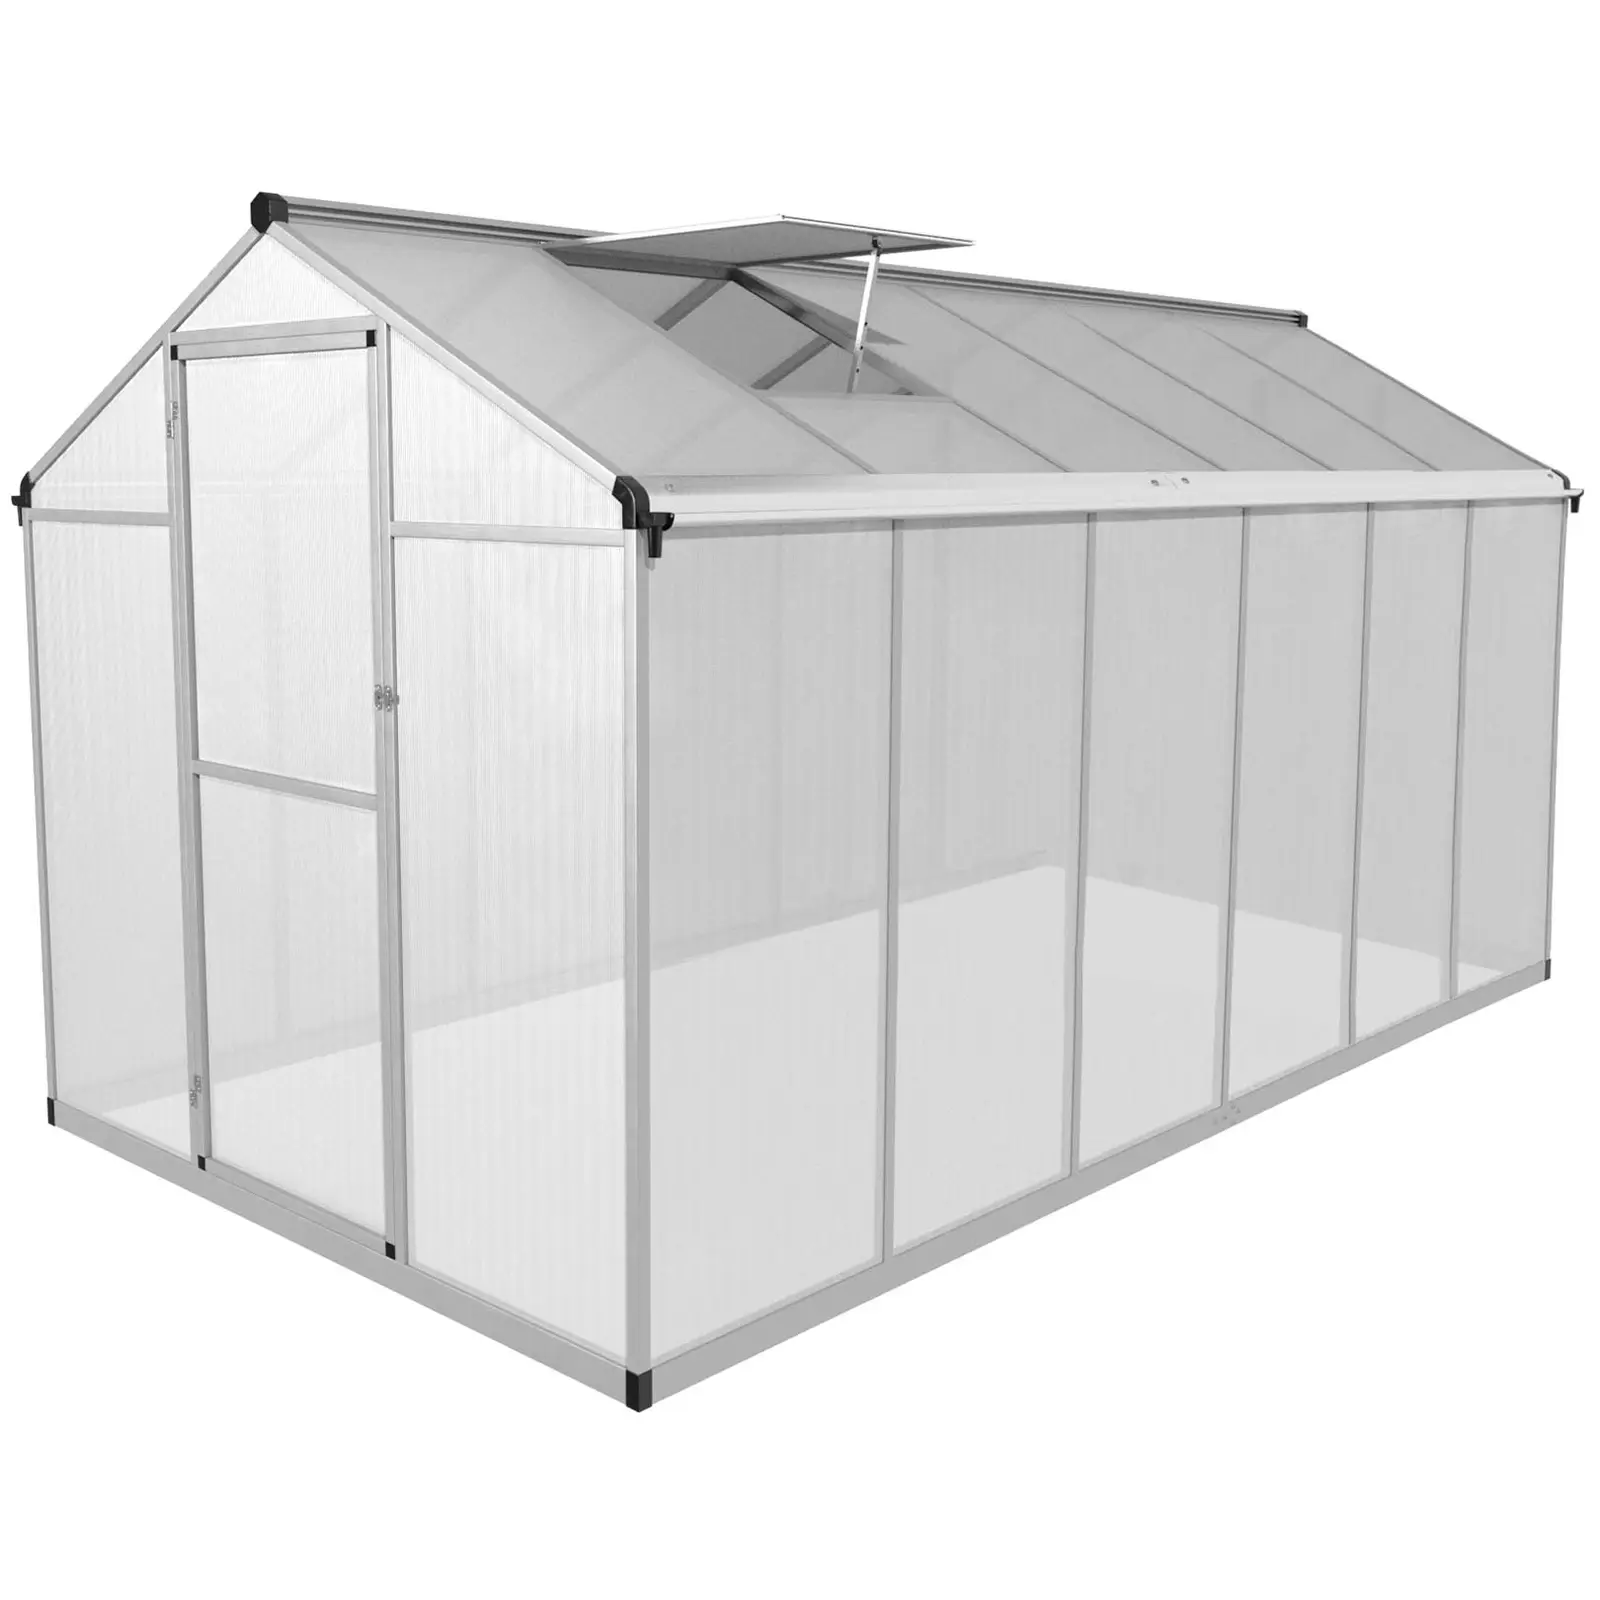 Greenhouse - 362 x 190 x 195 cm - polycarbonate + aluminium